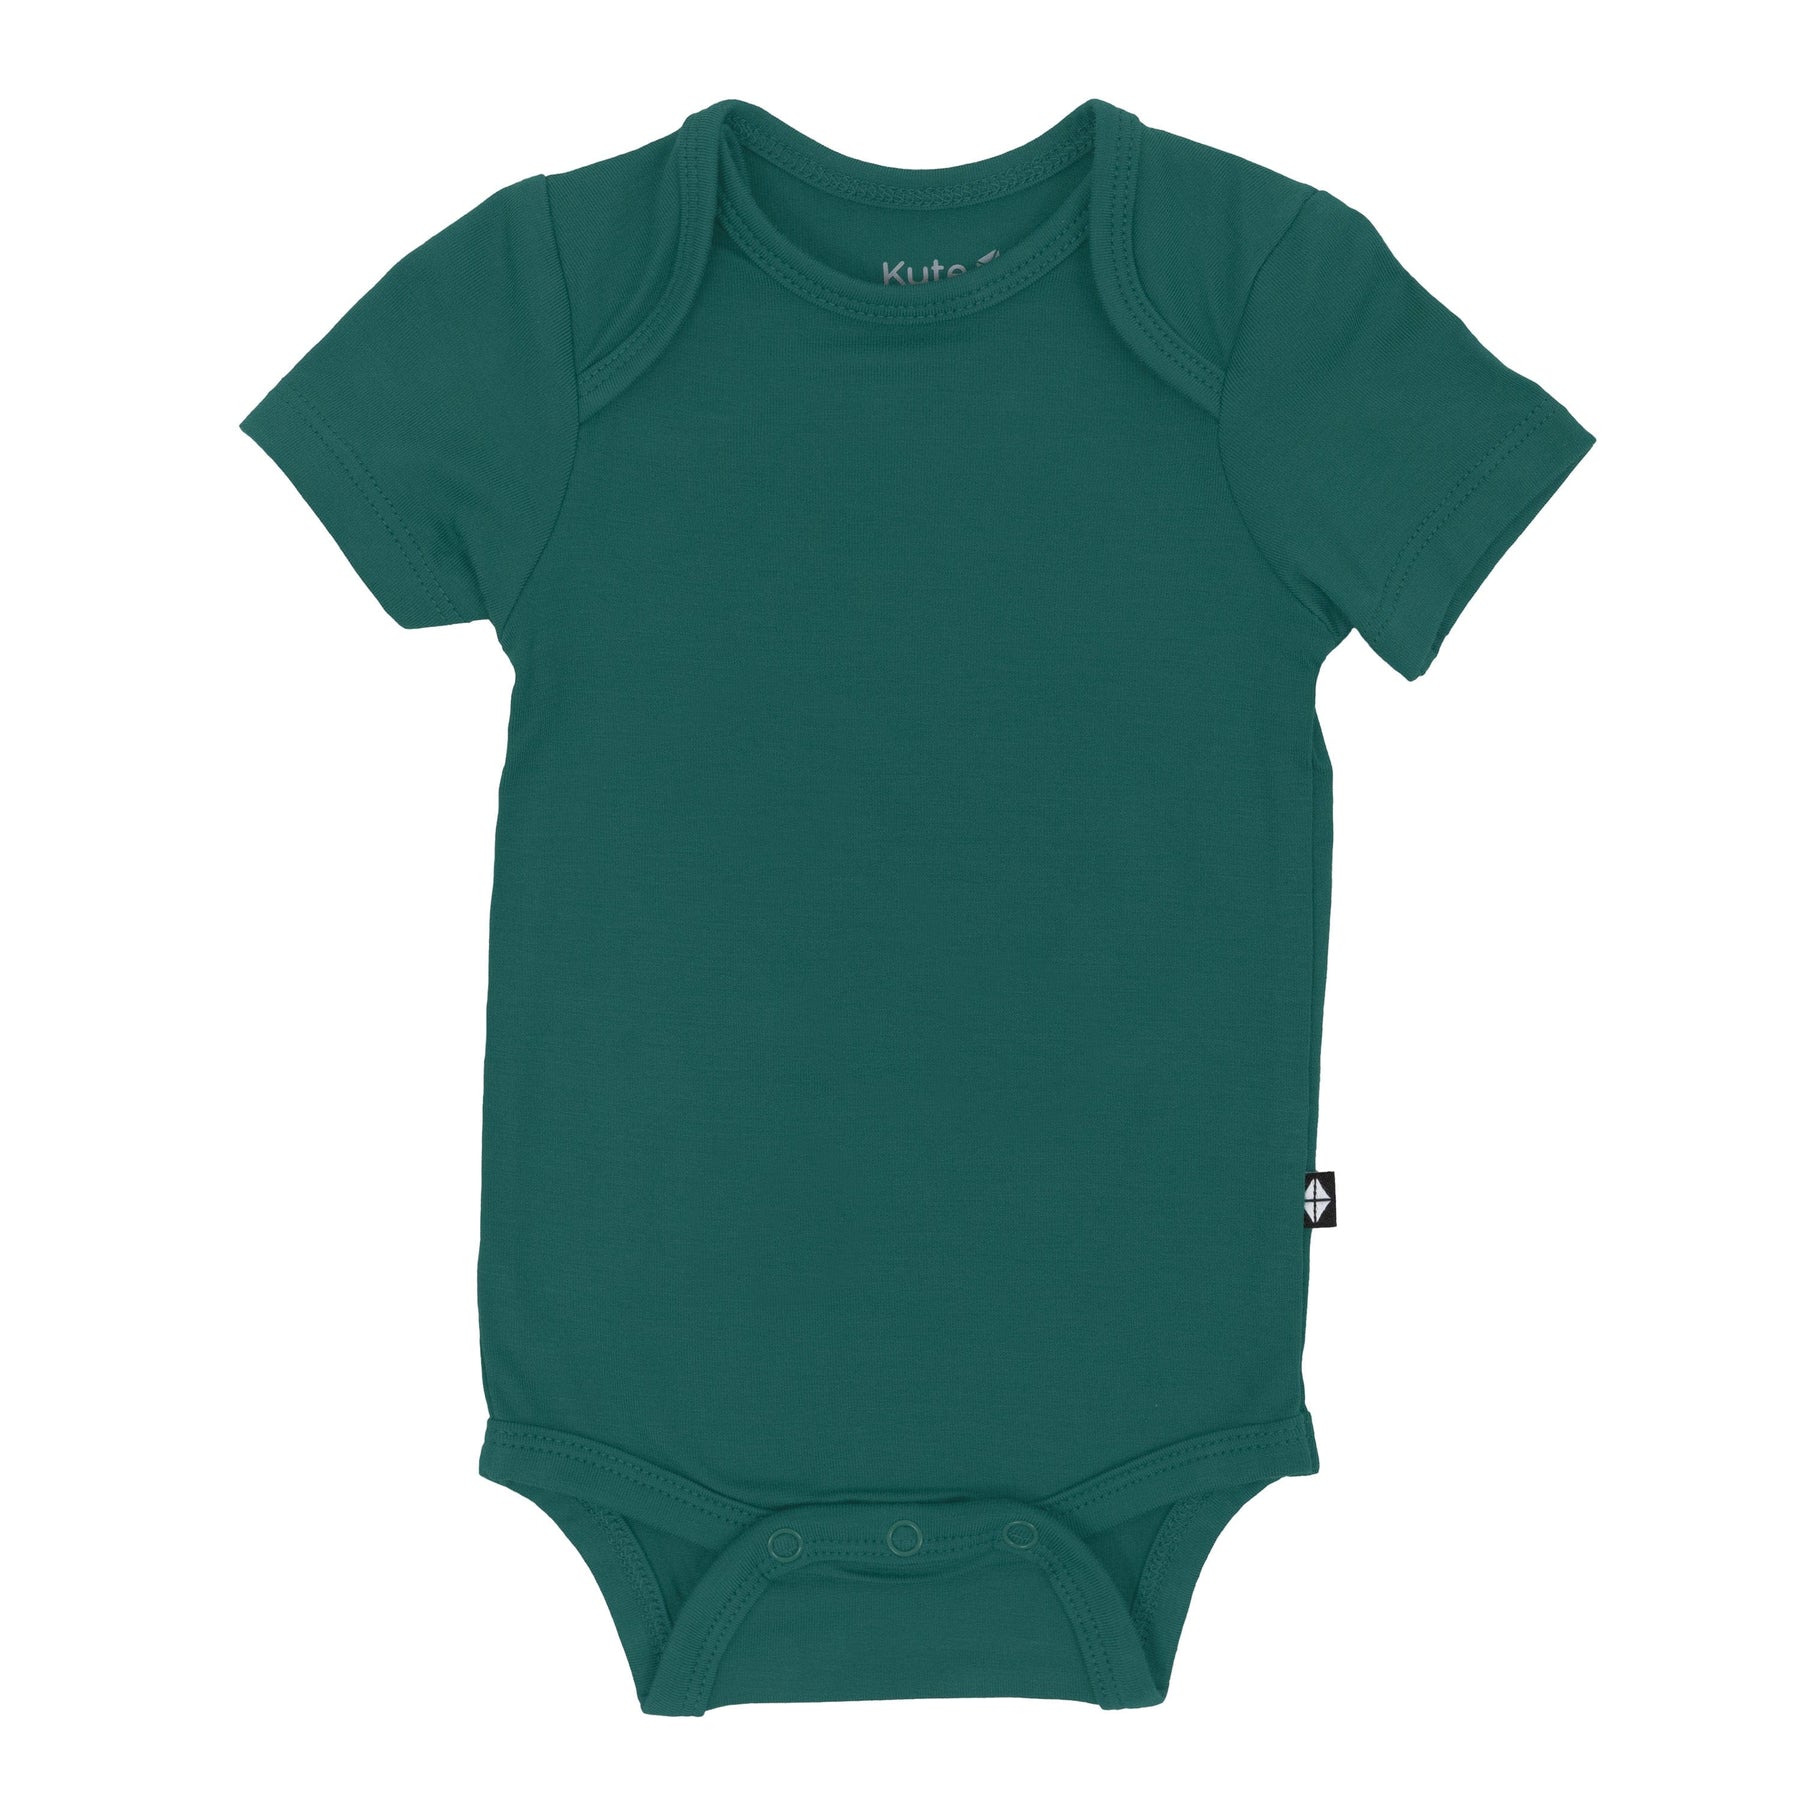 Kyte Baby Bodysuit in Emerald